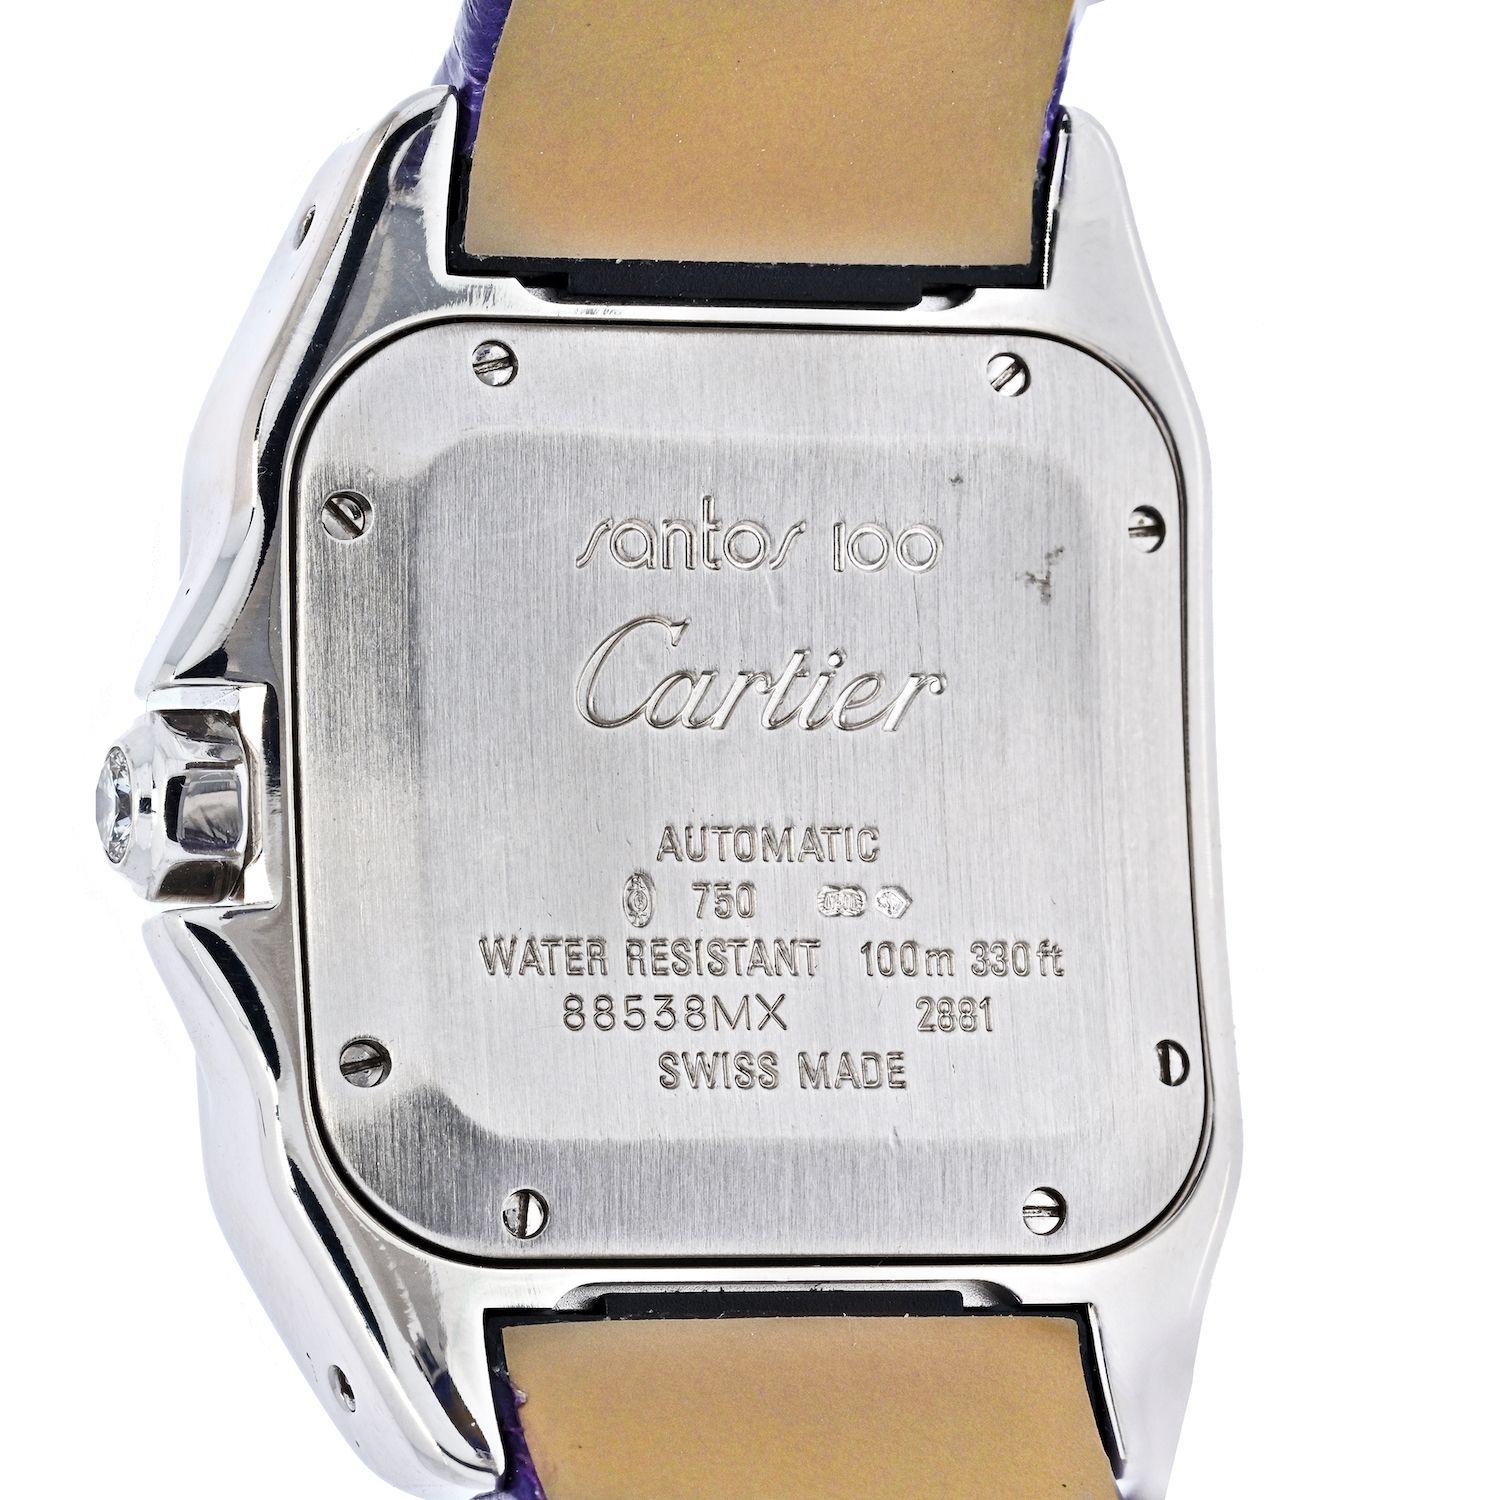 Sie werden sich in diese schöne Cartier Santos Uhr verlieben, sobald Sie sie sehen. 
Sie hat alles, was es braucht: Diamantlünette, perfekte 33 mm Gehäusebreite, lila Lederarmband, graues und sehr seltenes Perlmutt-Zifferblatt. Es ist ein